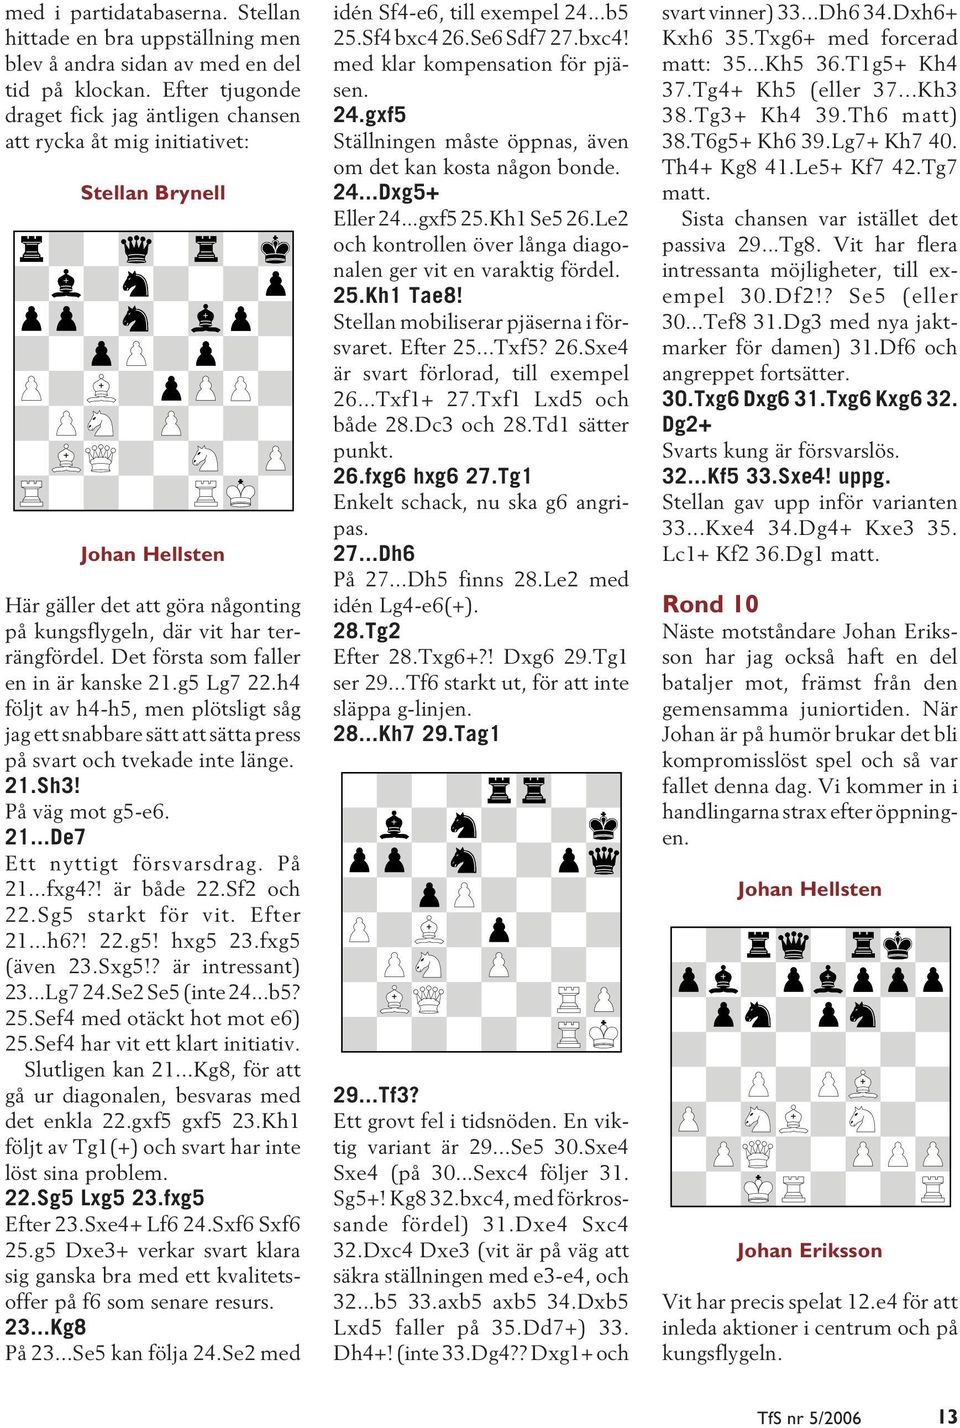 Det första som faller en in är kanske 21.g5 Lg7 22.h4 följt av h4-h5, men plötsligt såg jag ett snabbare sätt att sätta press på svart och tvekade inte länge. 21.Sh3! På väg mot g5-e6. 21...De7 Ett nyttigt försvarsdrag.